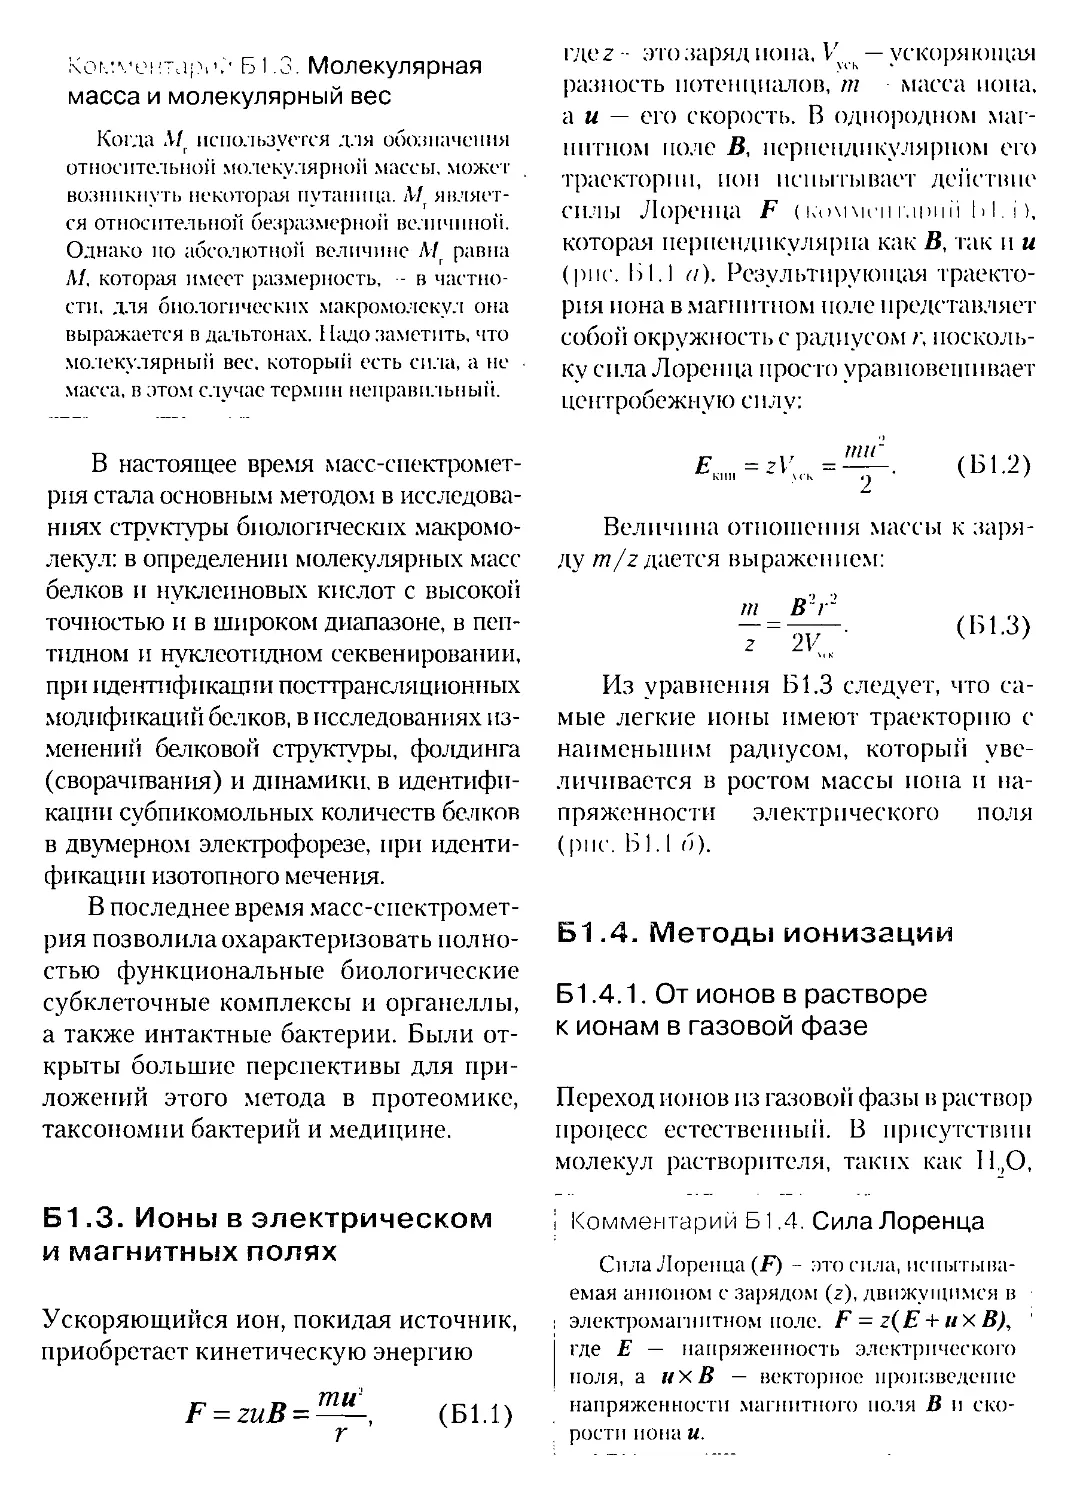 Б.3. Ионы в электрическом и магнитных полях
Б.4. Методы ионизации